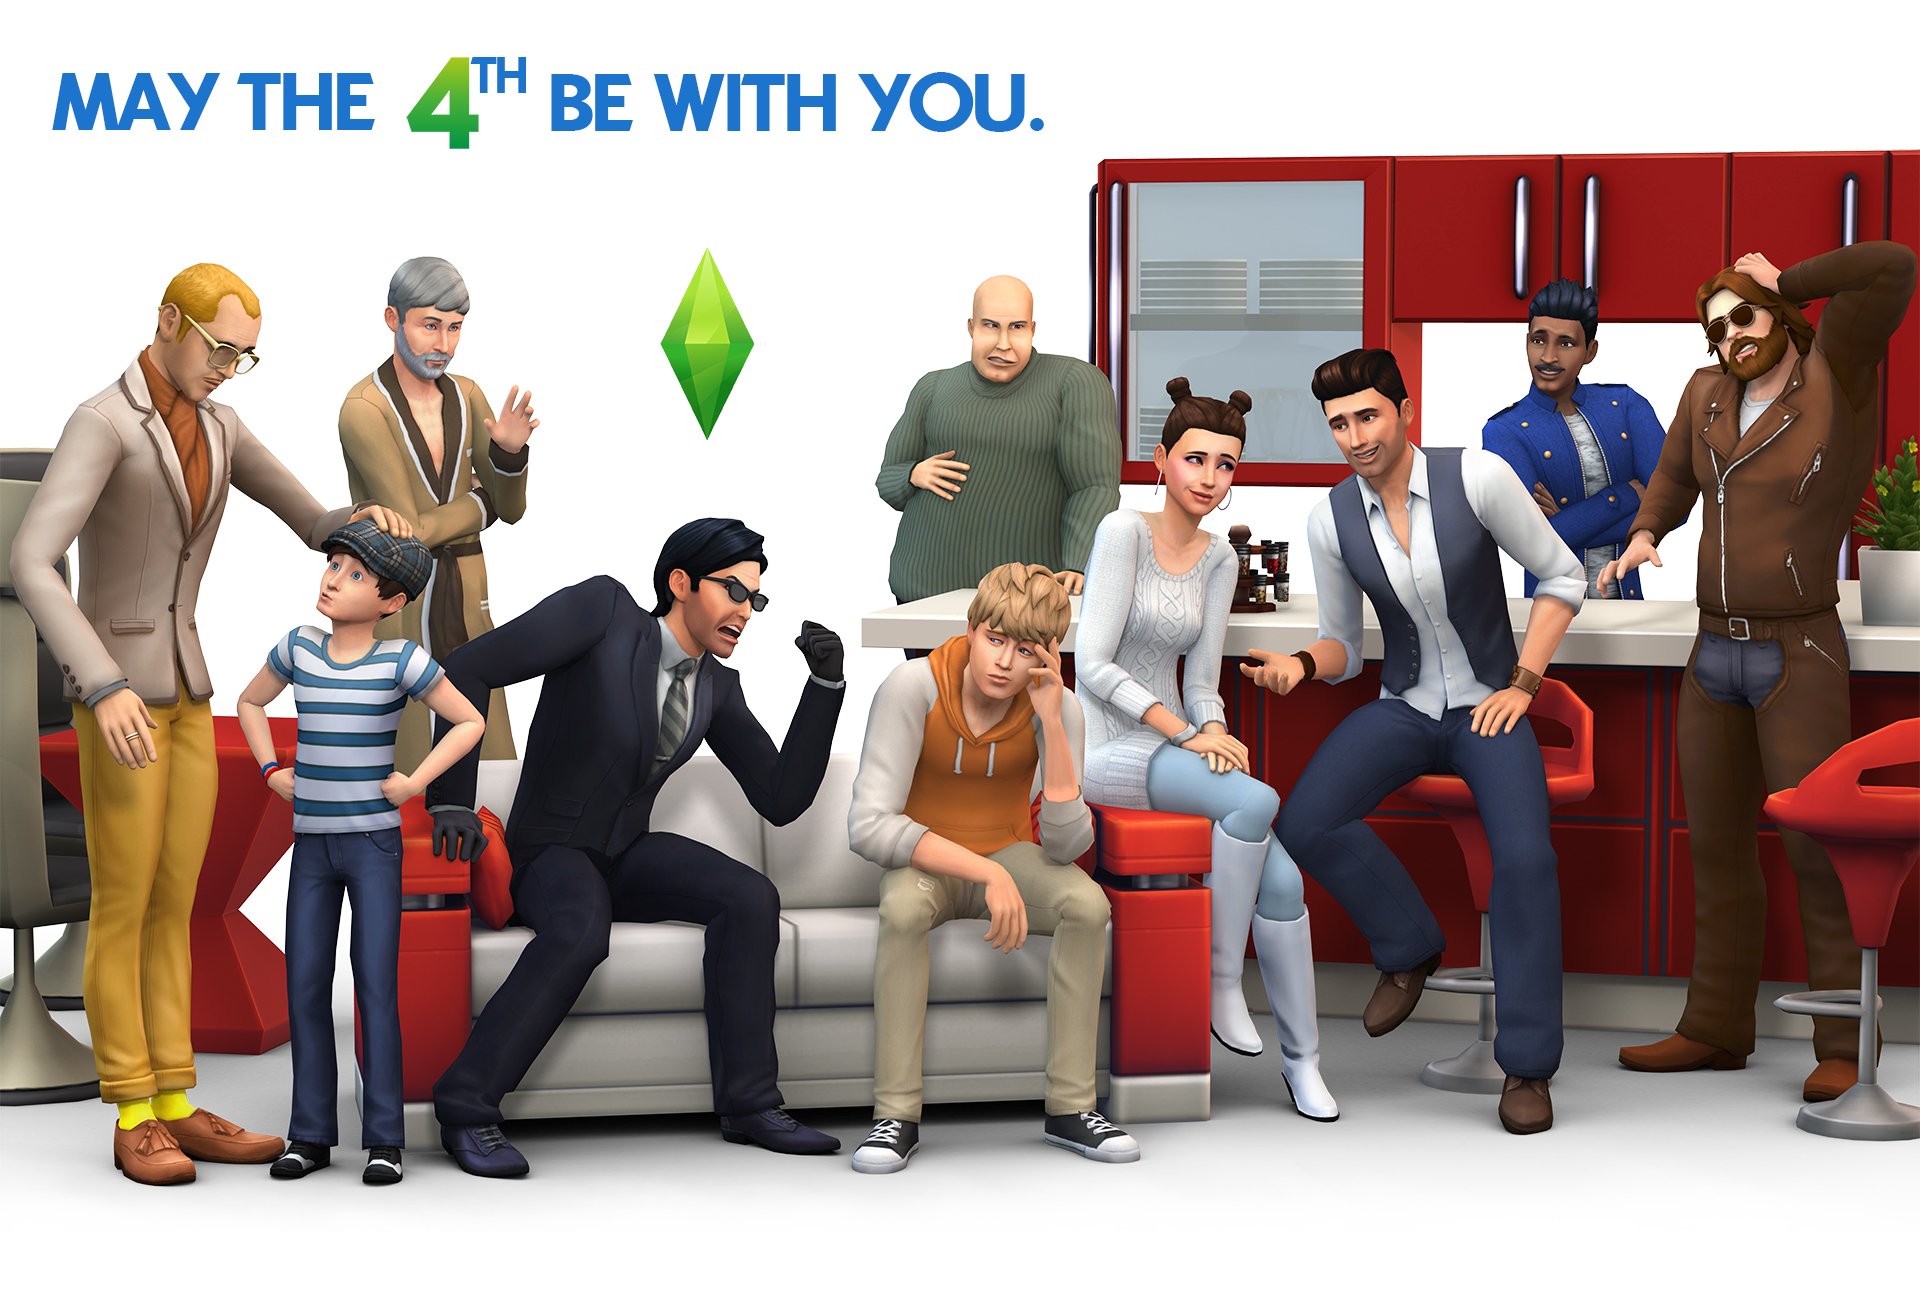 De Sims 4 Een Nieuwe Render Sims Nieuws